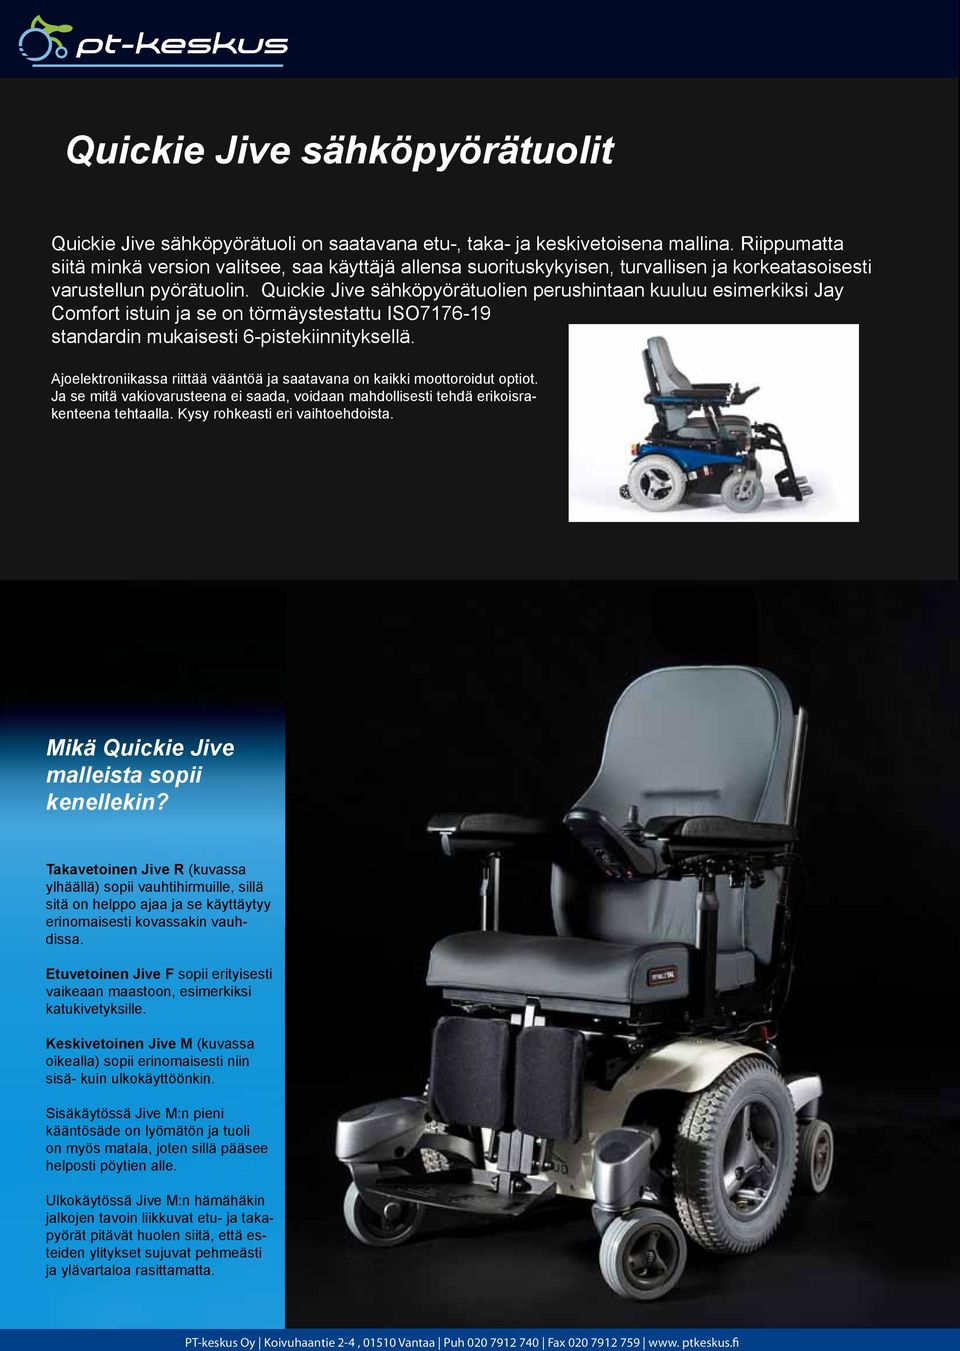 Quickie Jive sähköpyörätuolien perushintaan kuuluu esimerkiksi Jay Comfort istuin ja se on törmäystestattu ISO7176-19 standardin mukaisesti 6-pistekiinnityksellä.